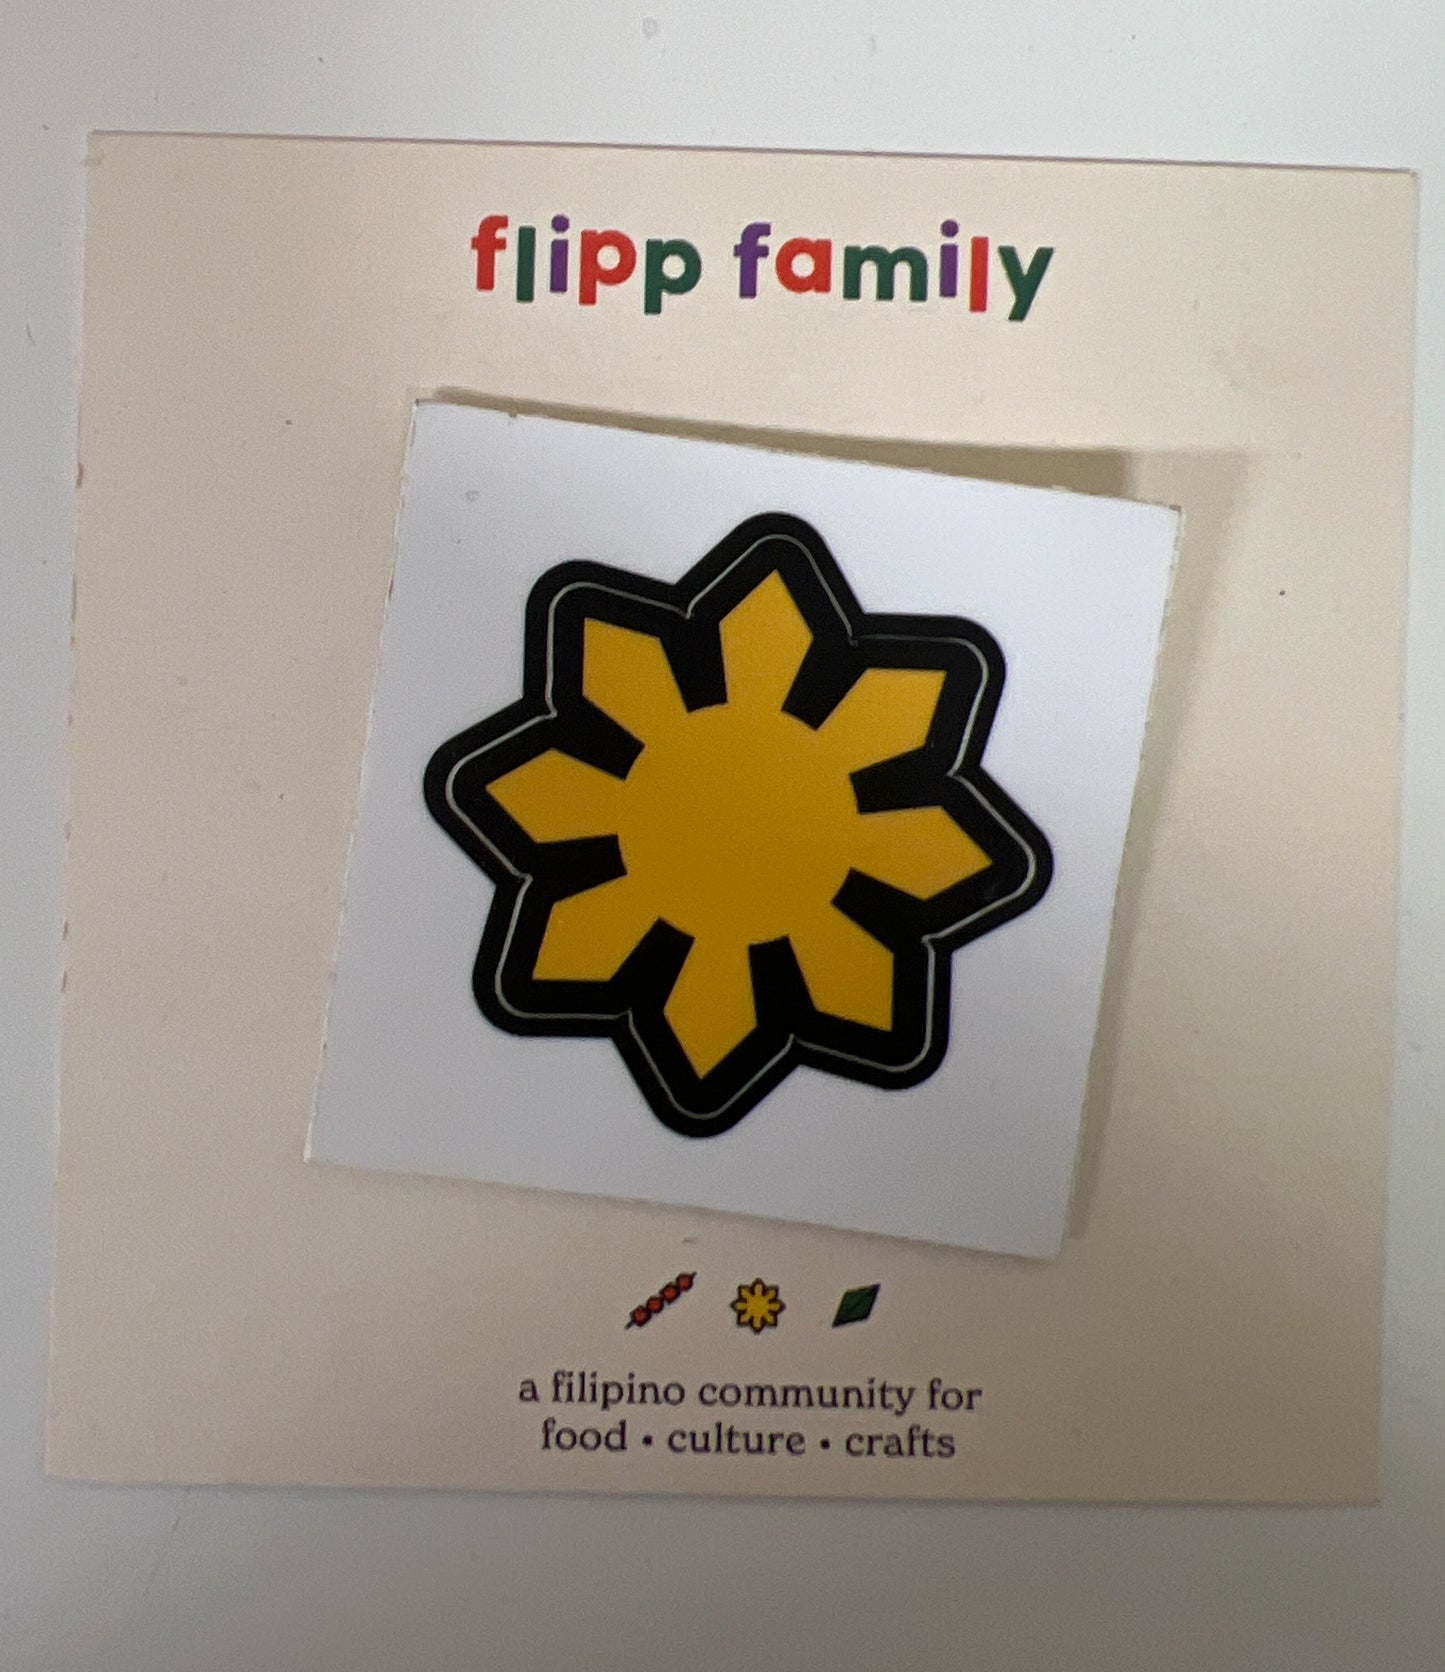 Flipp Fam Filipino Sun Sticker